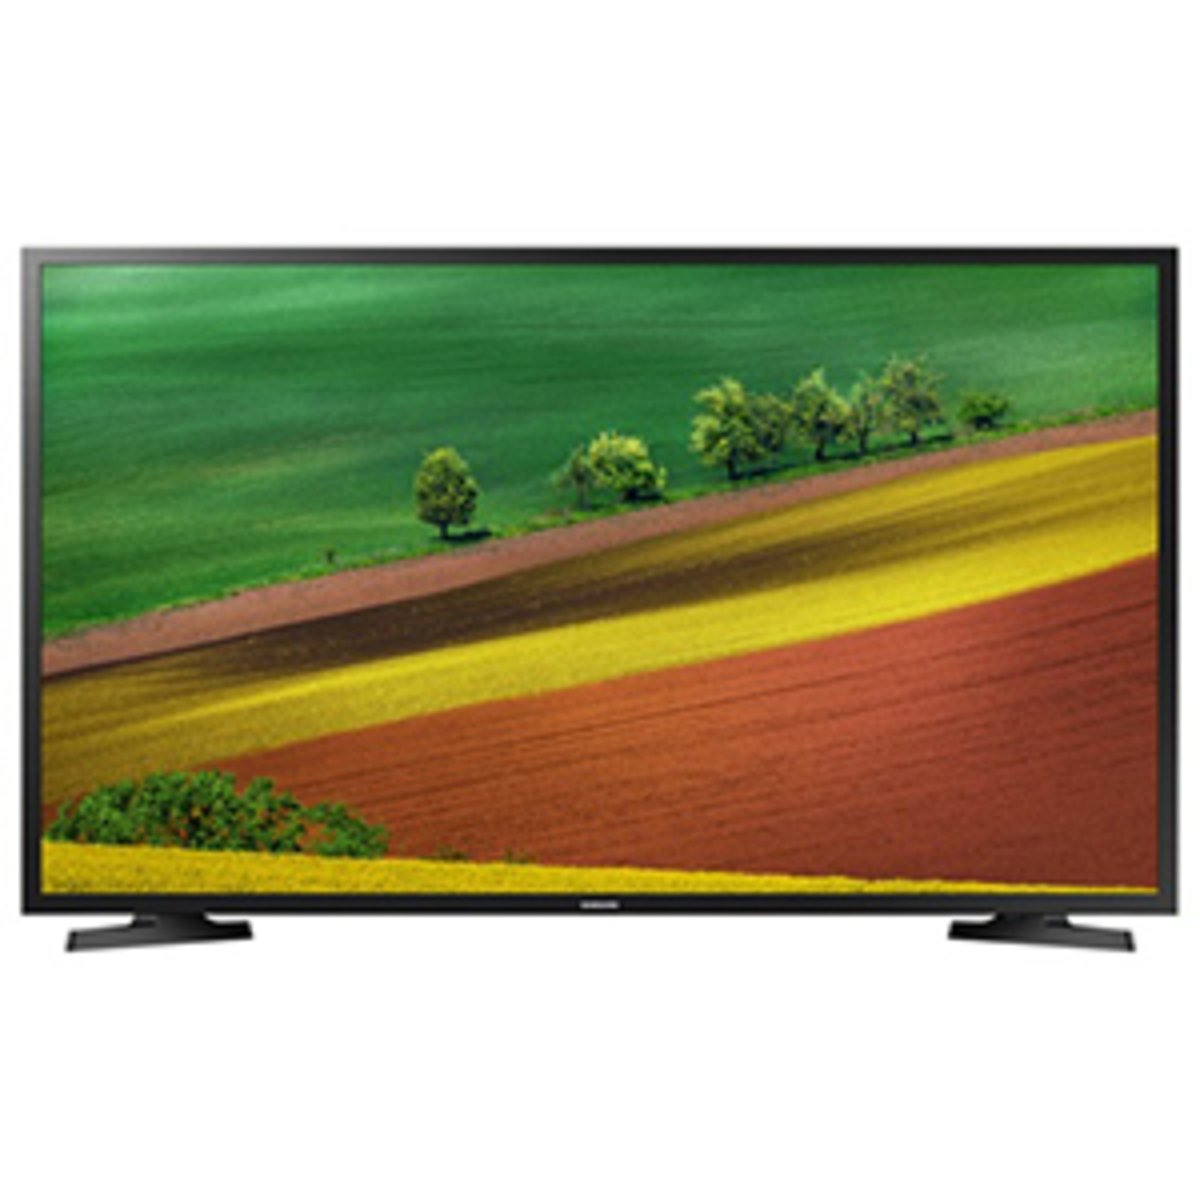 Samsung HD LED TV UA32N5000 32inch